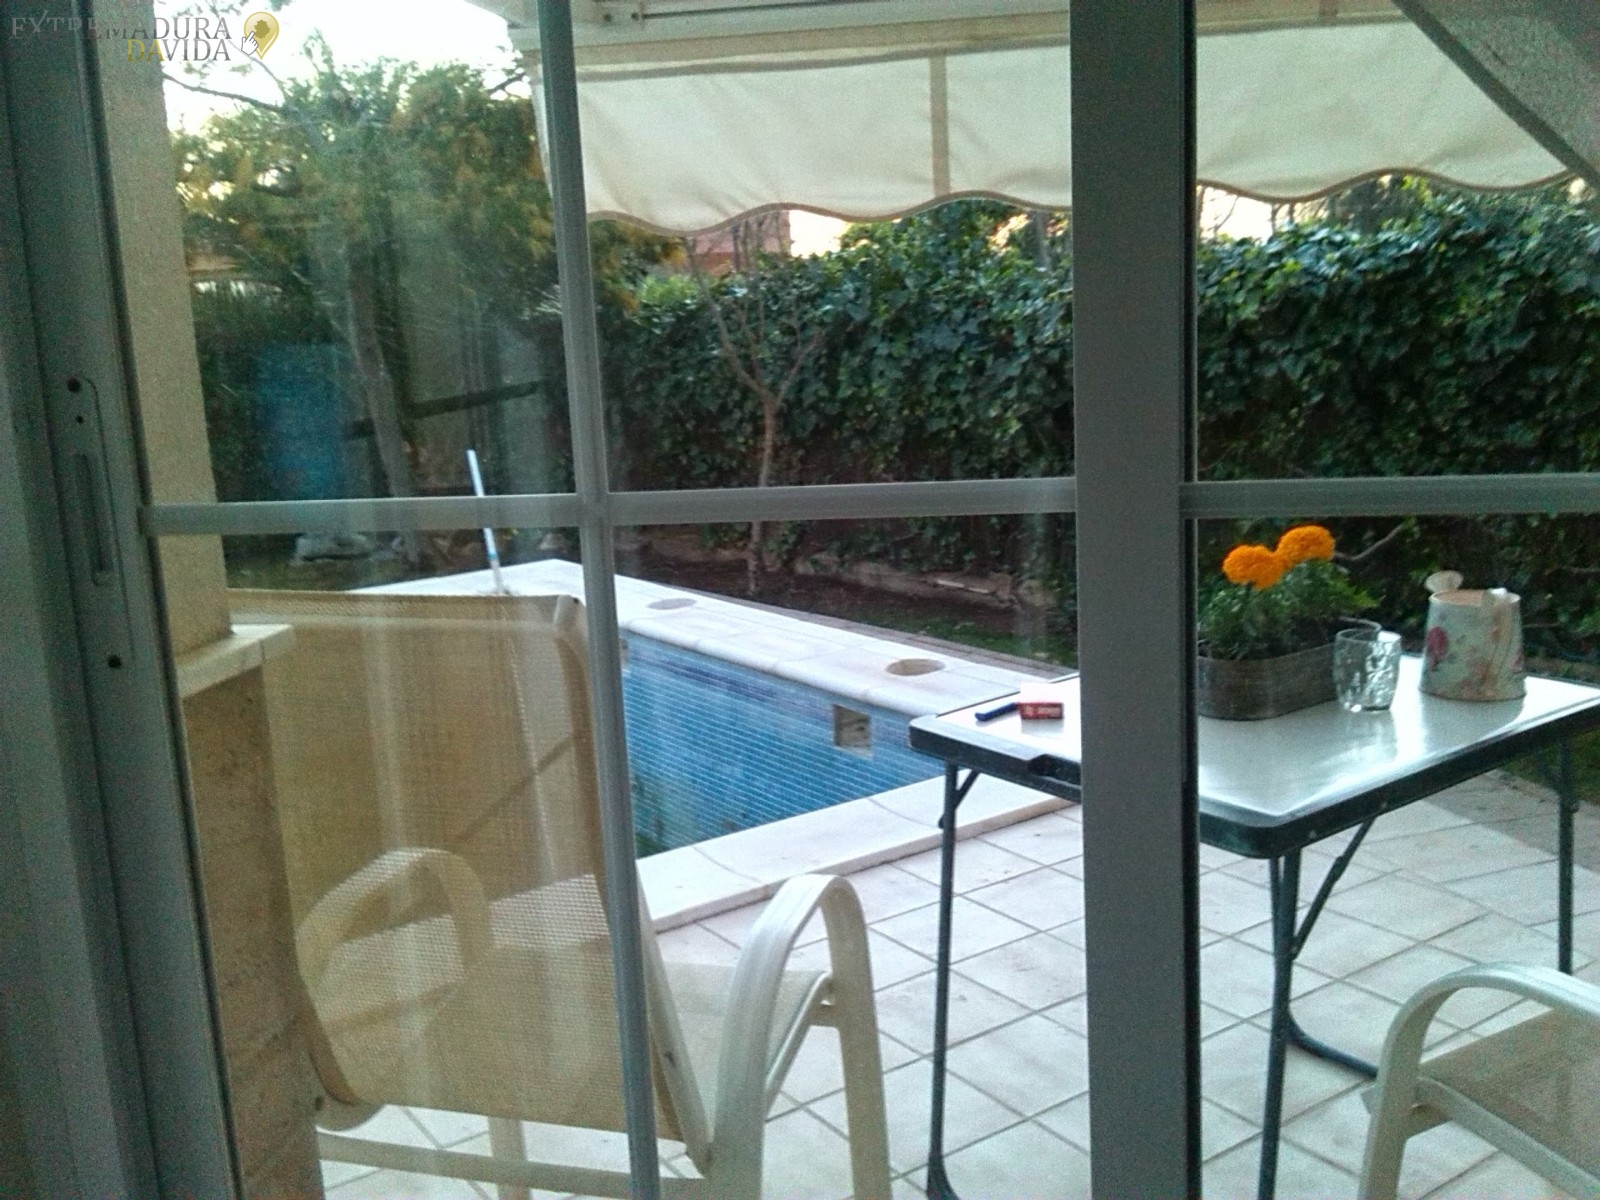 Para alquilar para vacaciones en Almendralejo chalet o casa de lujo con piscina en Extremadura